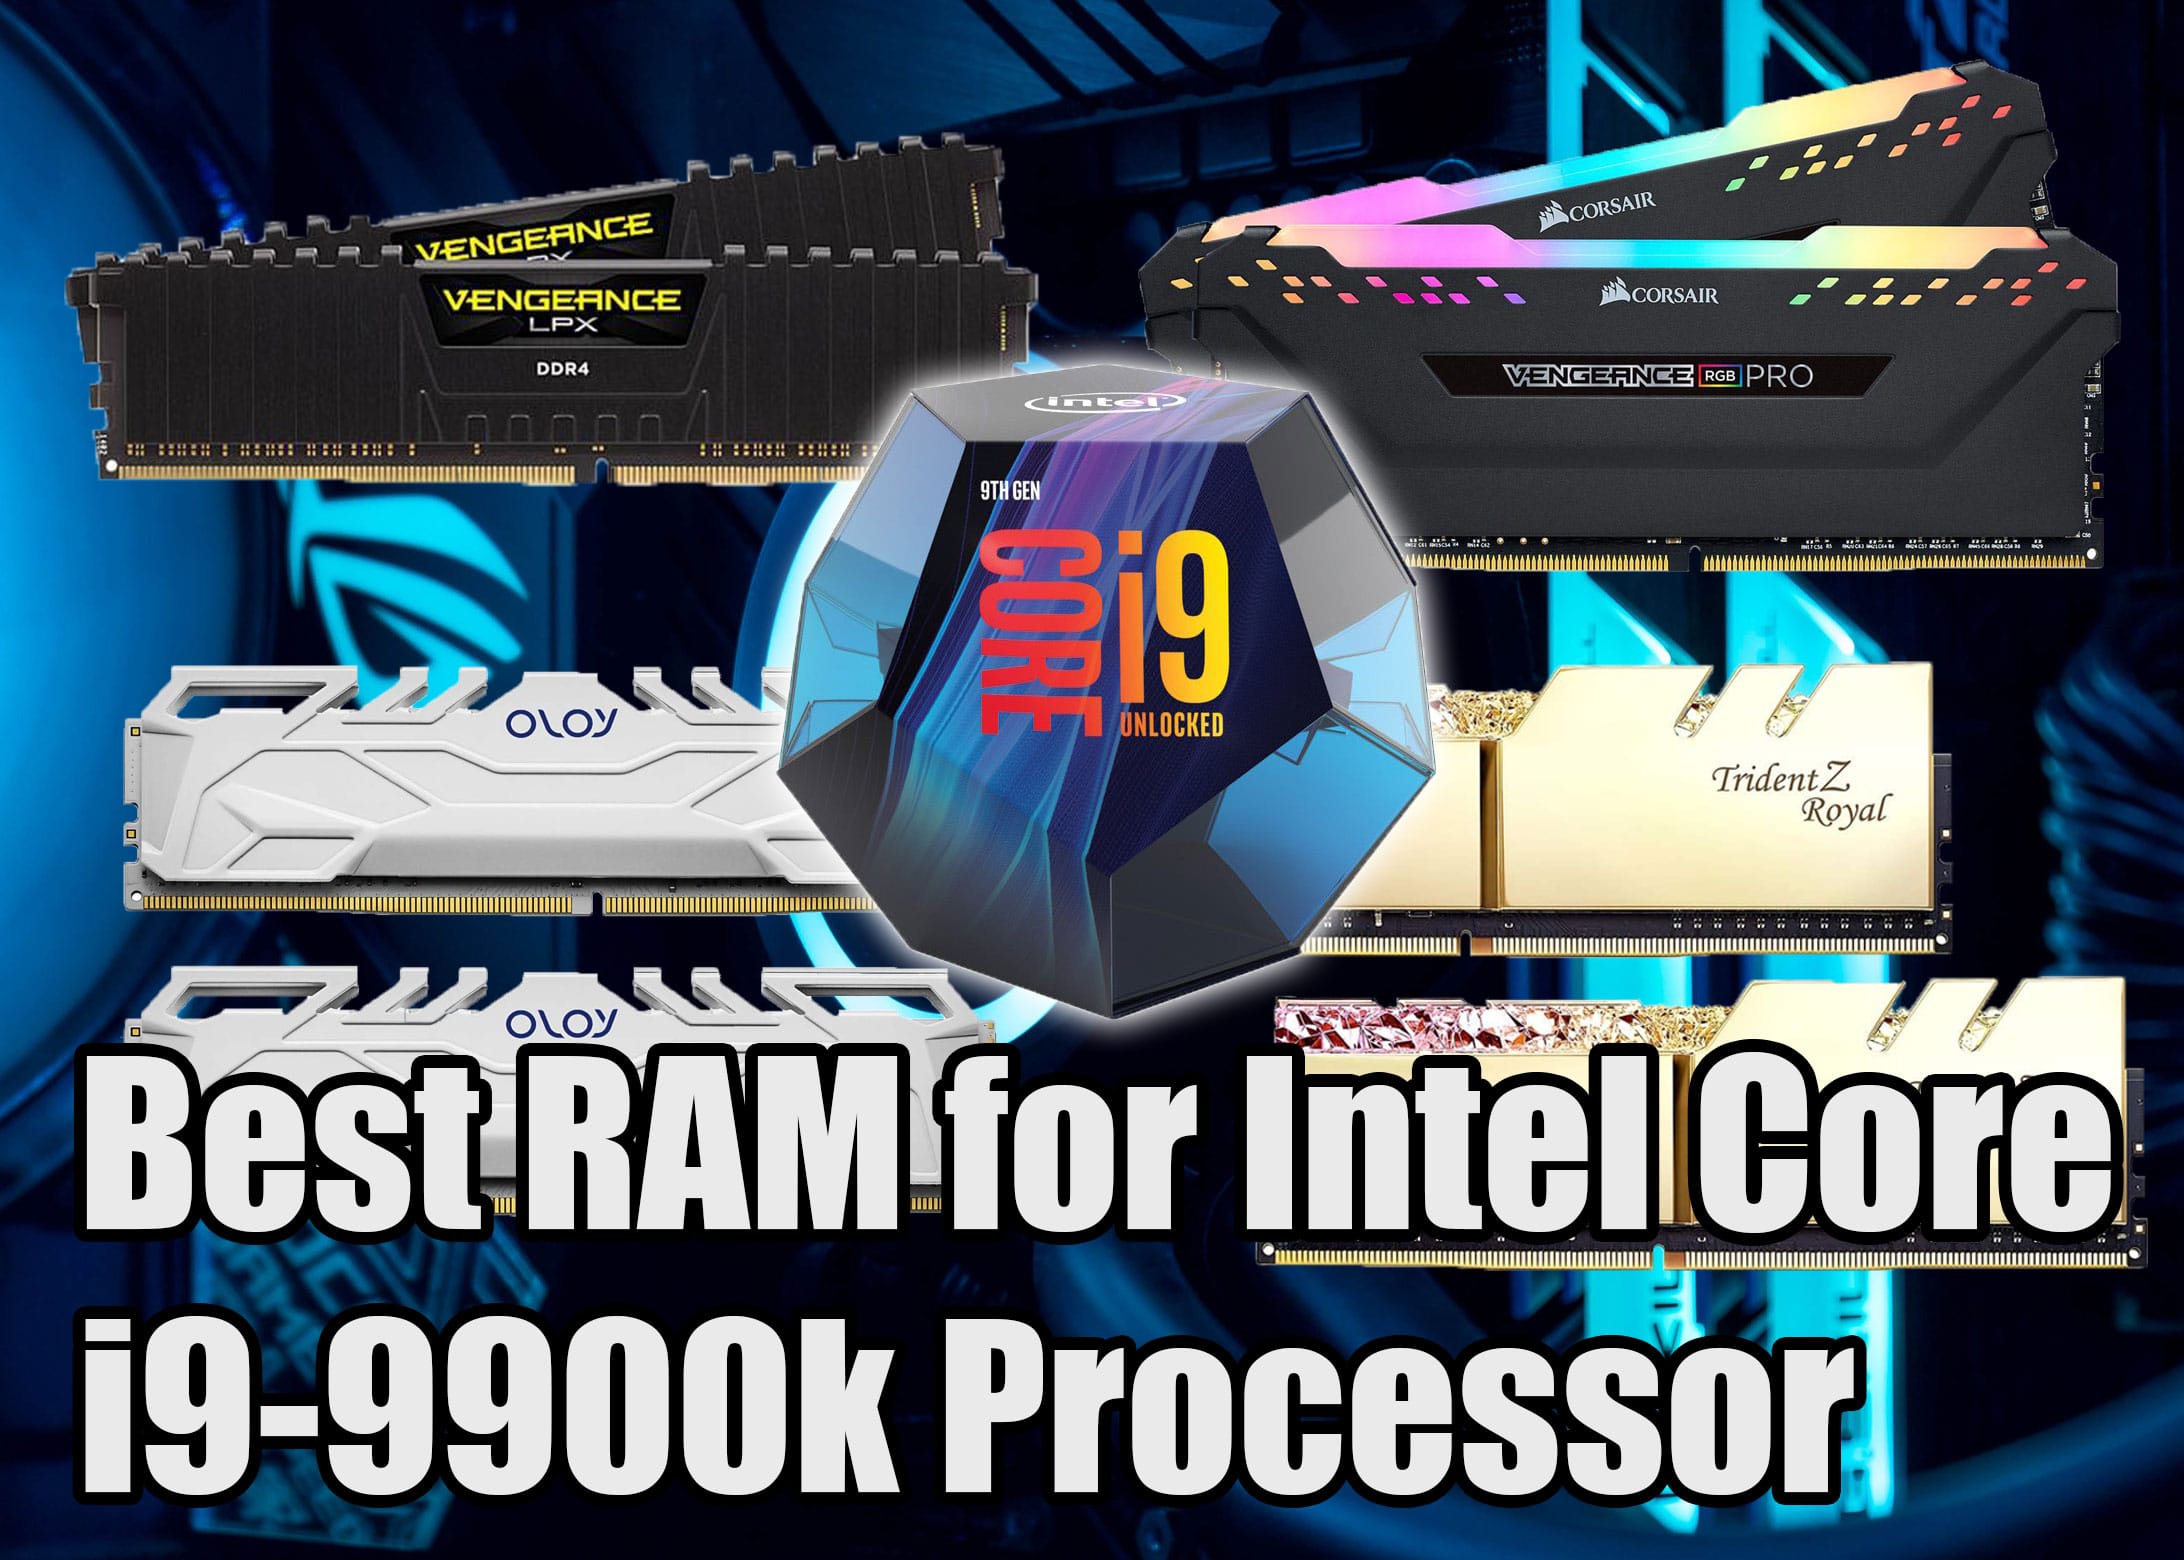 Best RAM for Intel Core i9-9900k